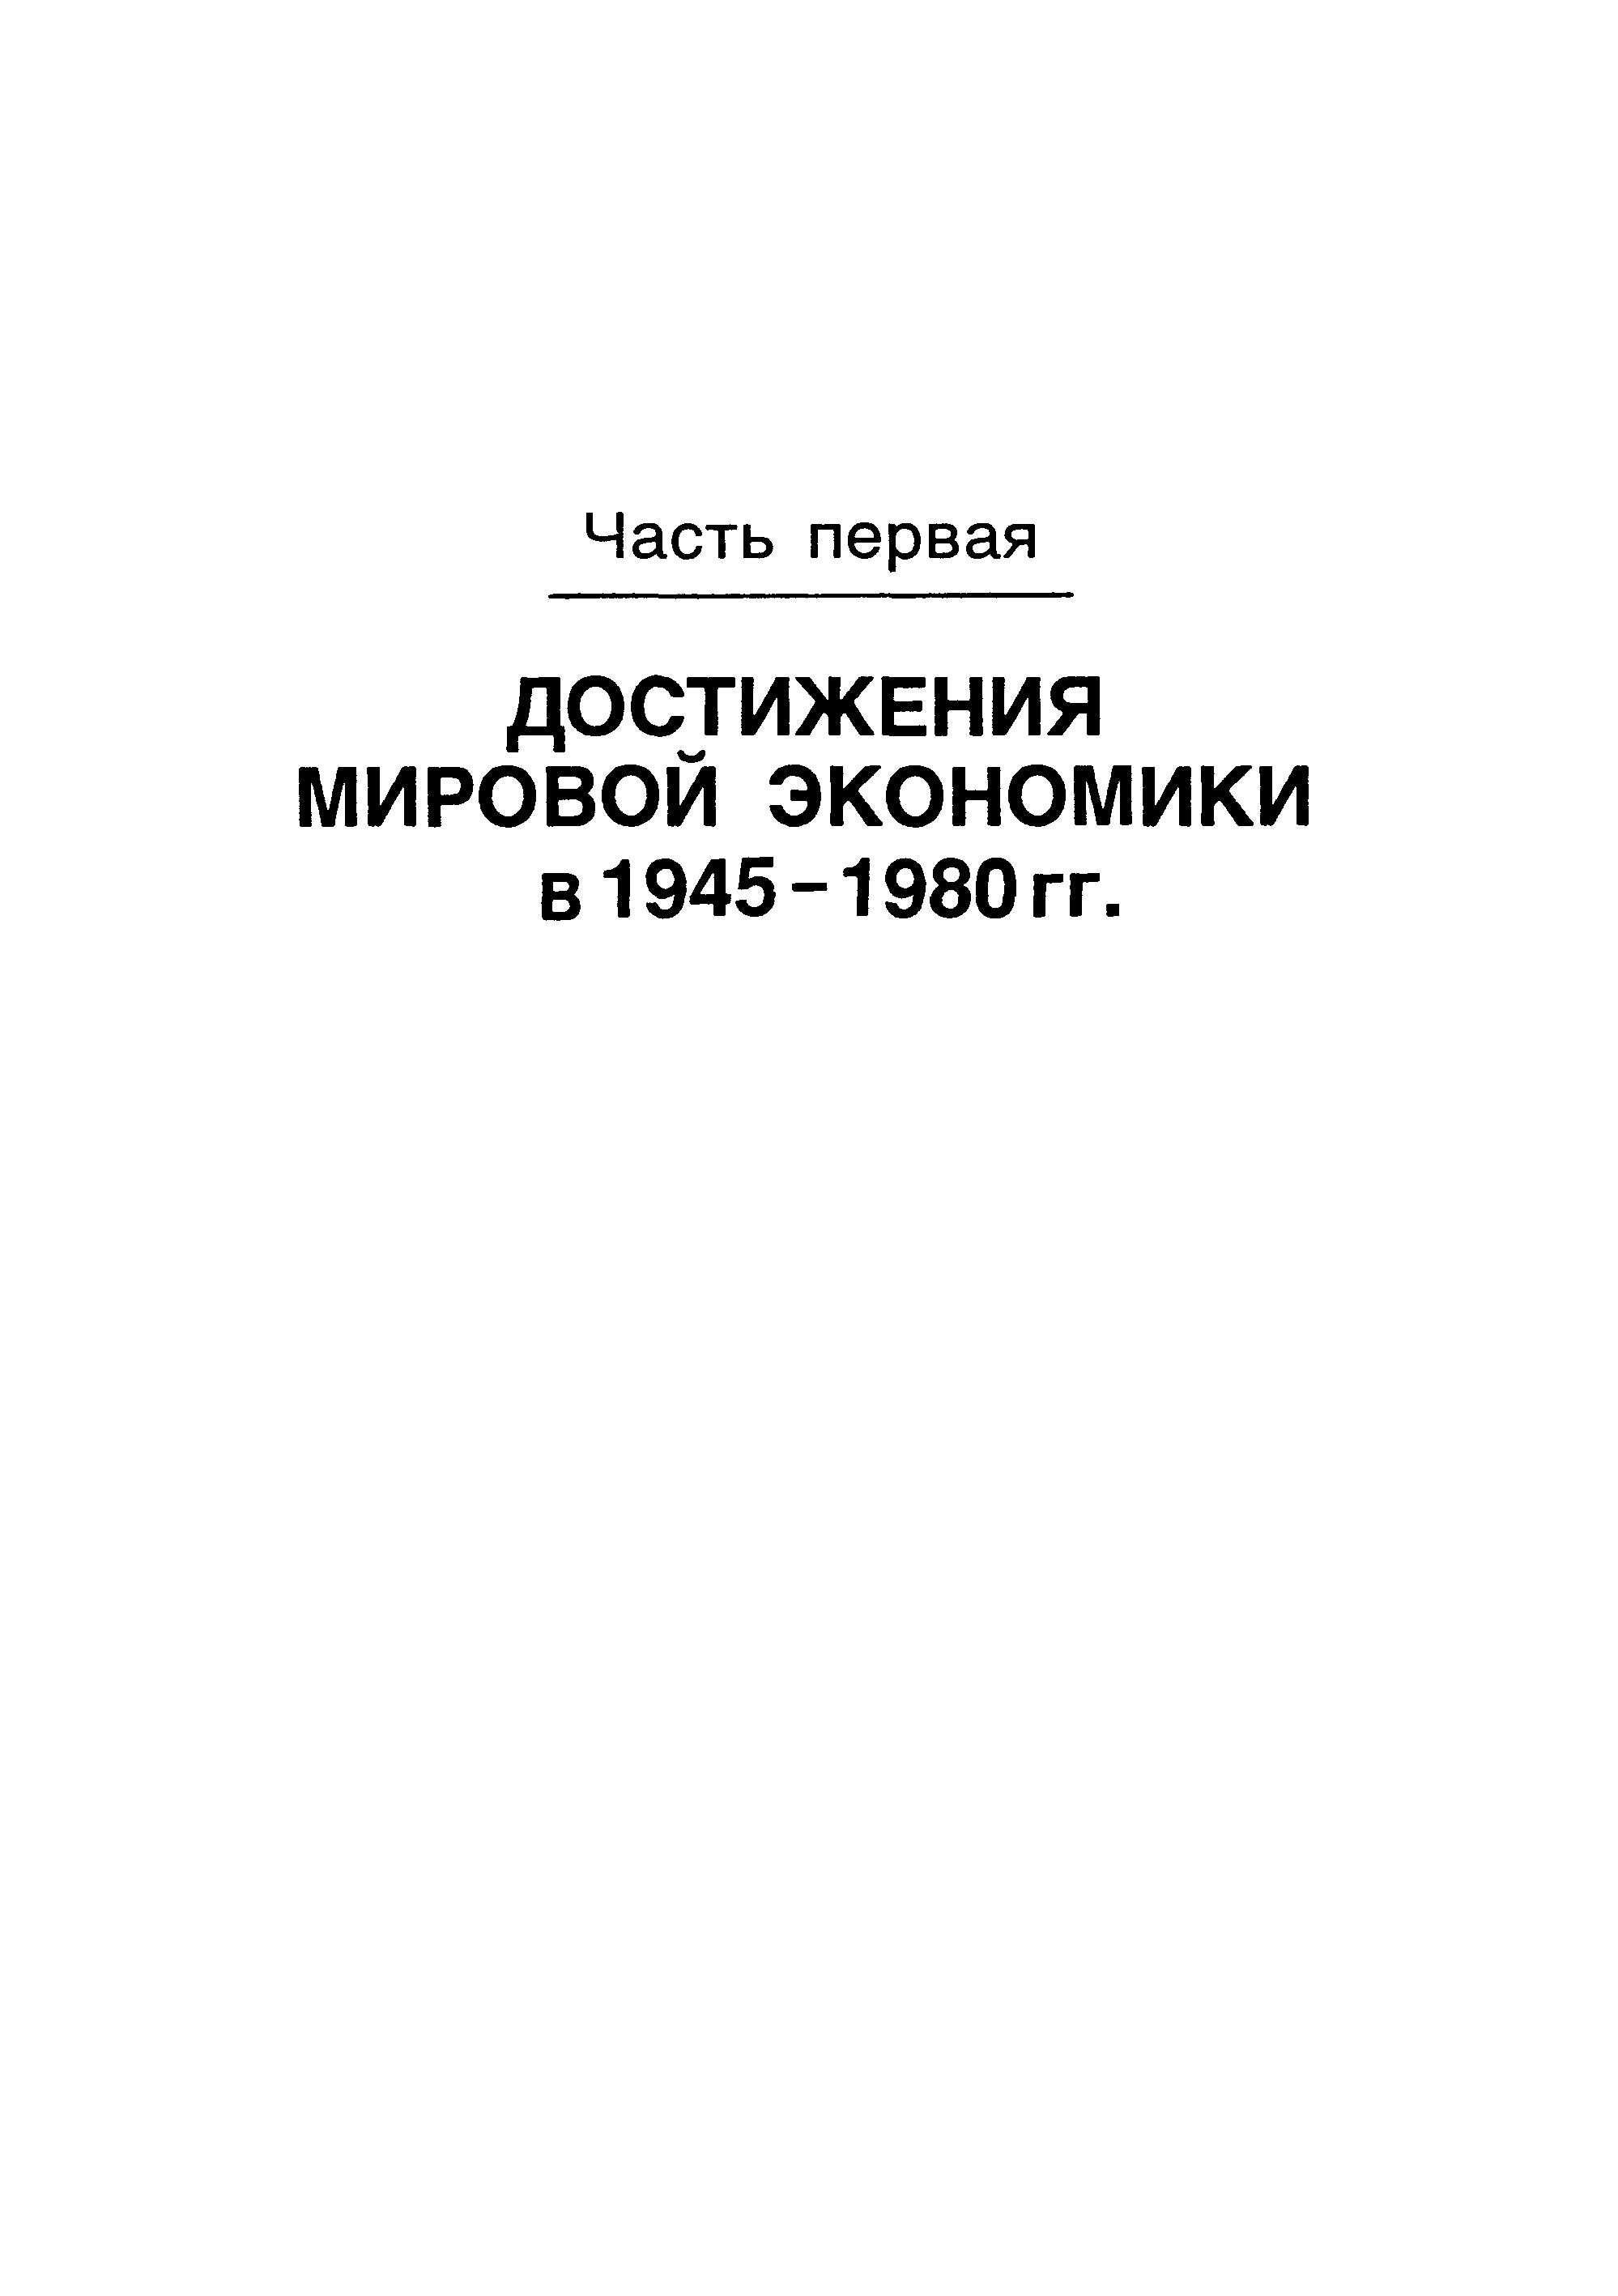 ДОСТИЖЕНИЯ МИРОВОЙ ЭКОНОМИКИ в 1945-1980 гг.
